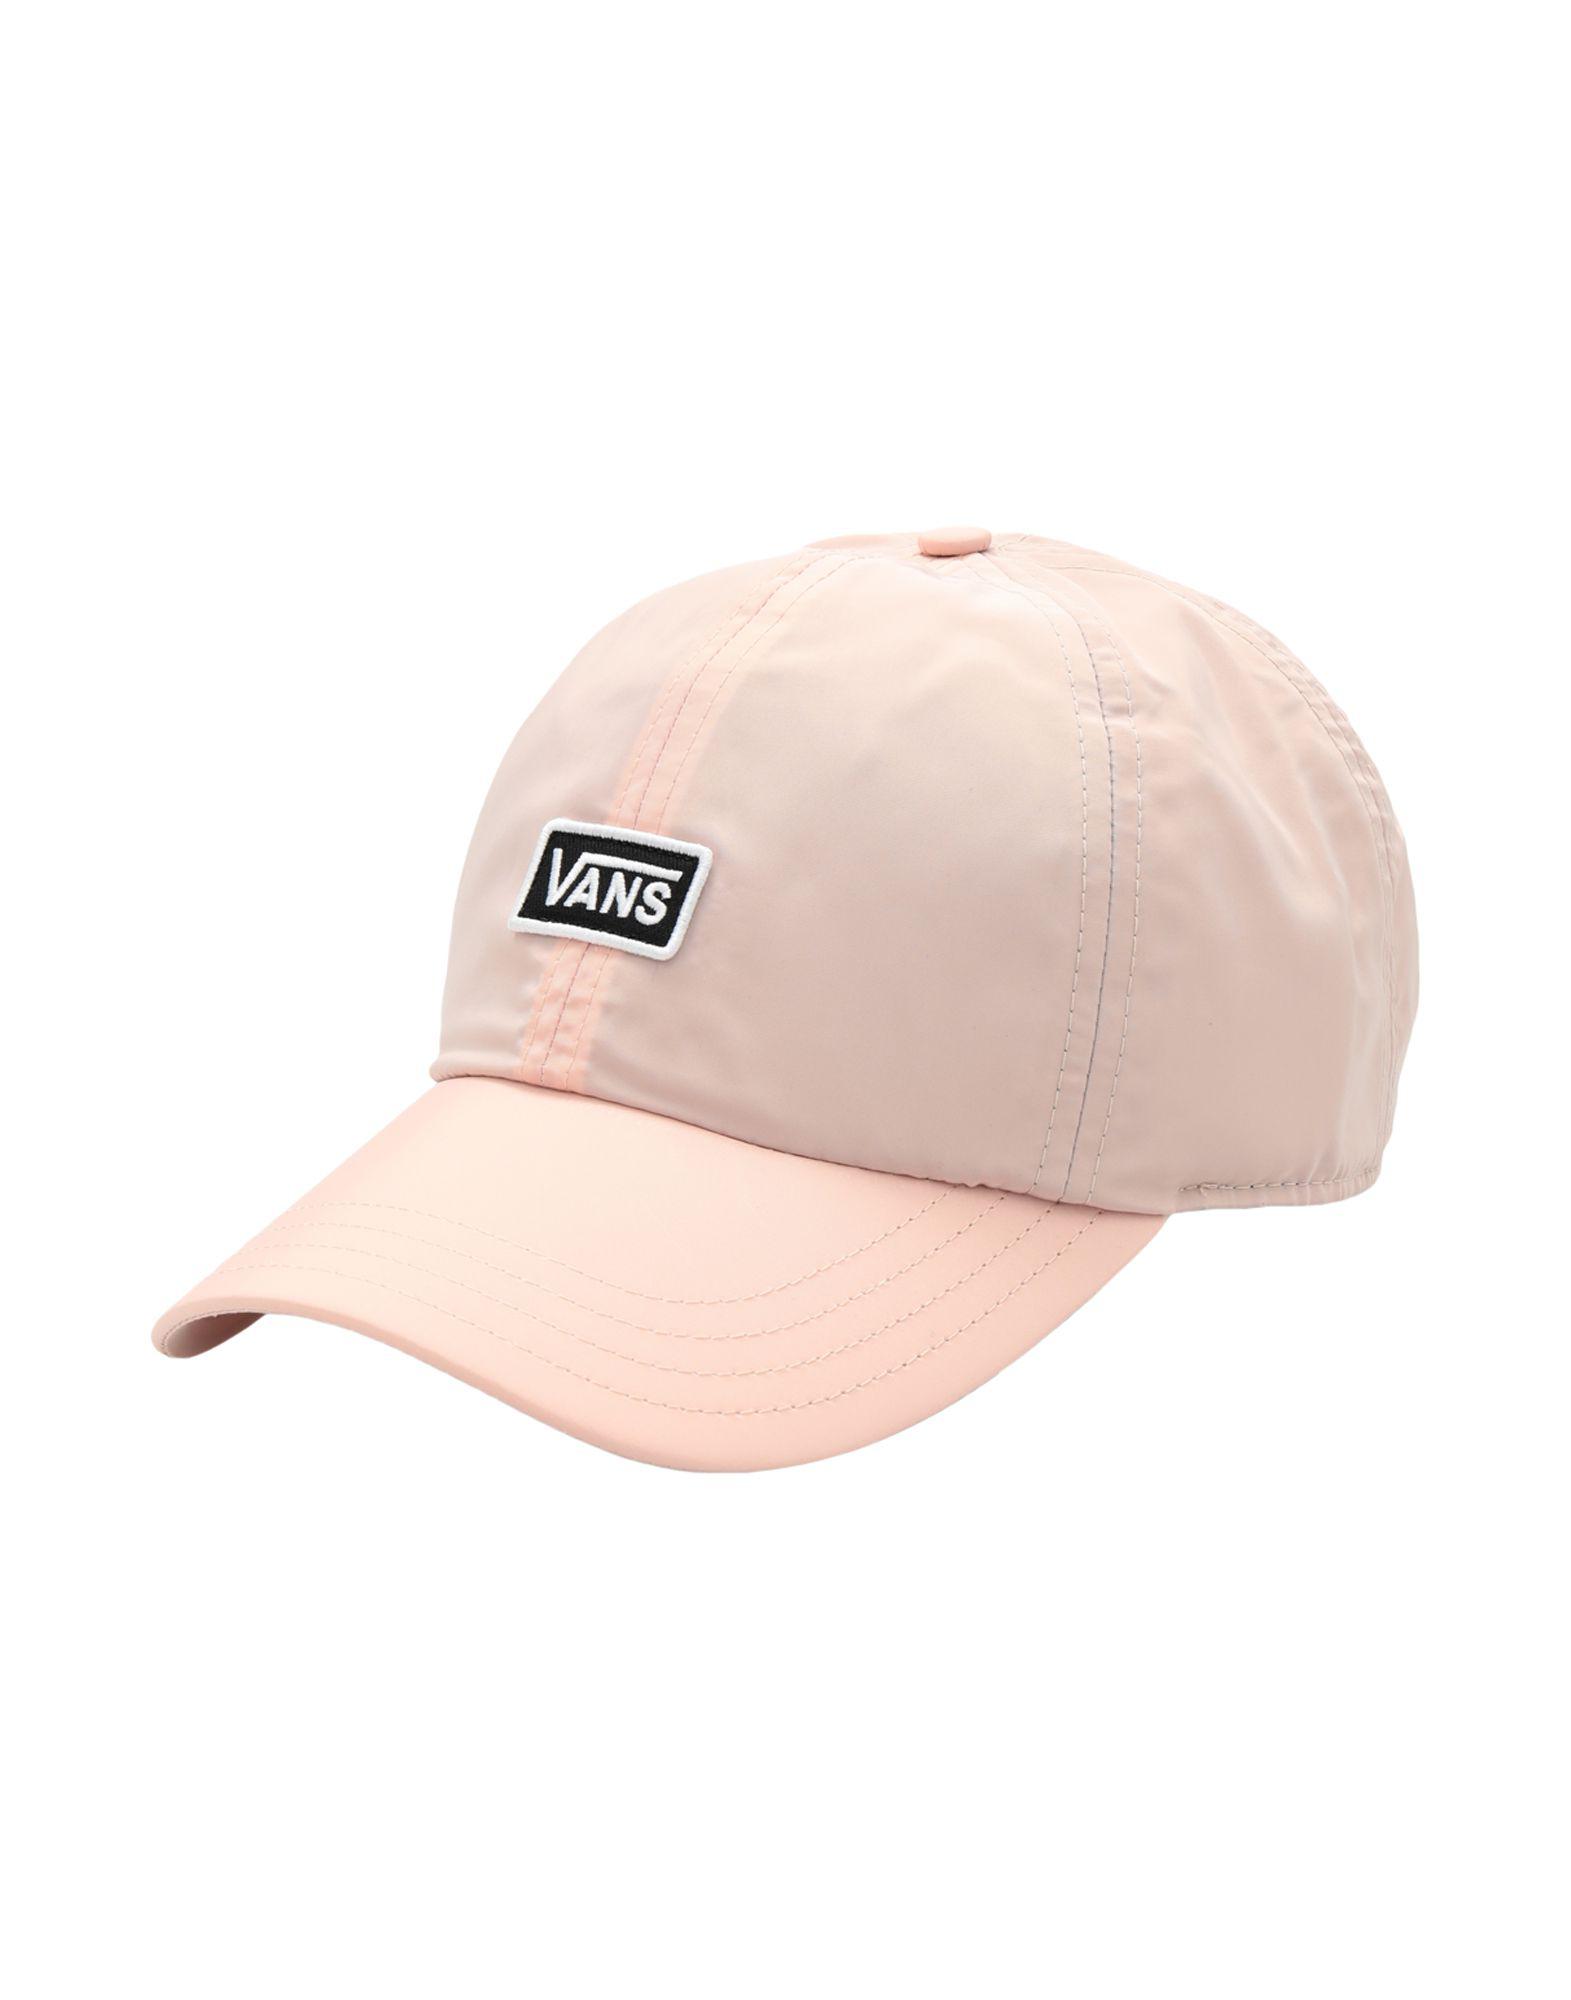 pink vans hat